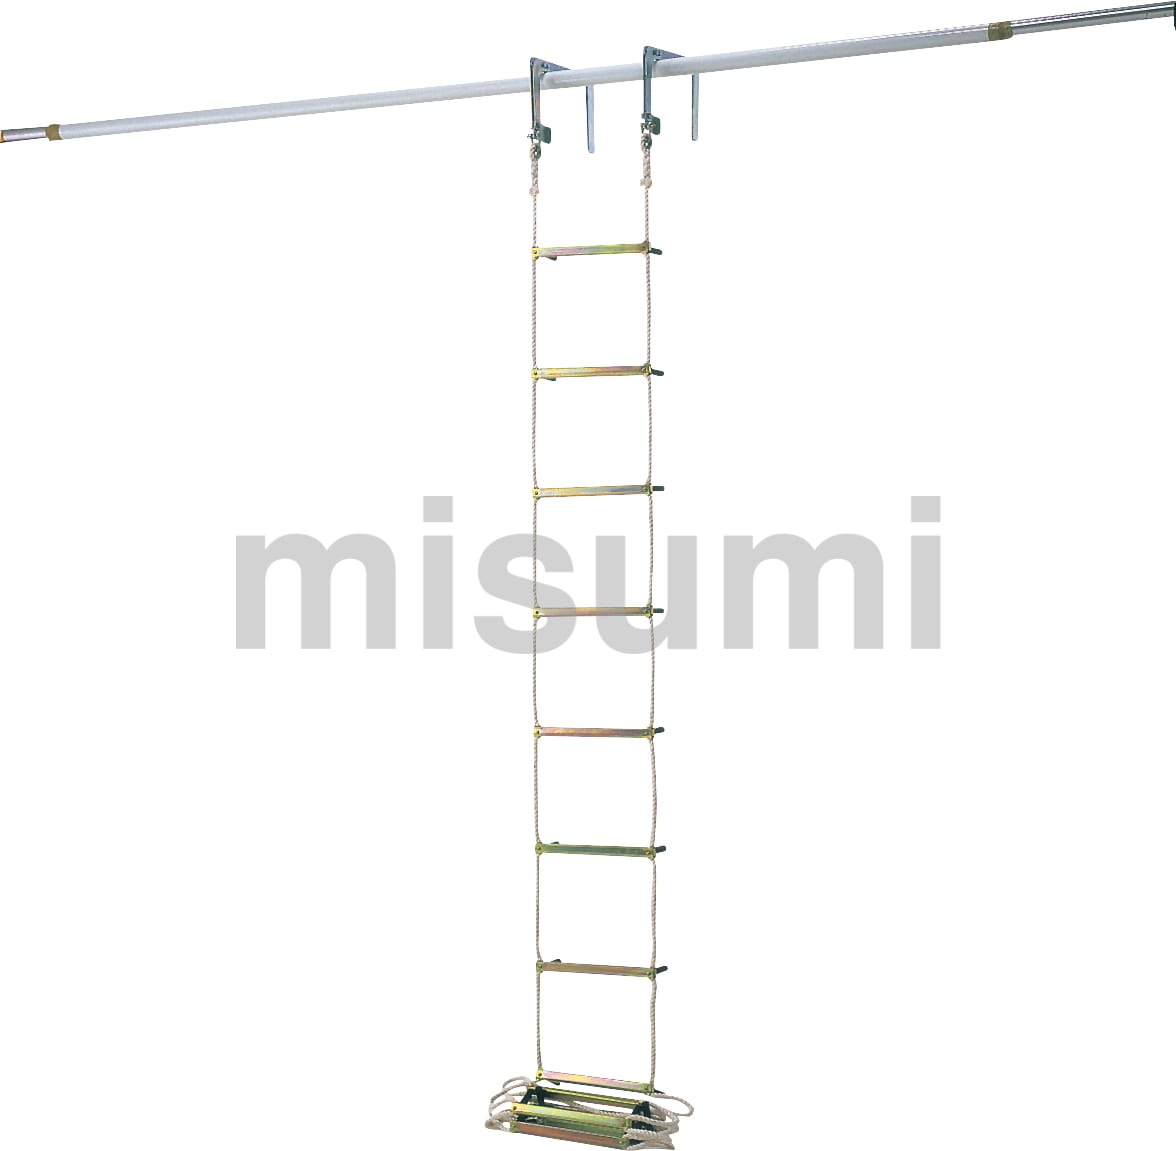 売れ済クリアランス ピカ 避難用ロープはしご EK型9m(品番:EK-9